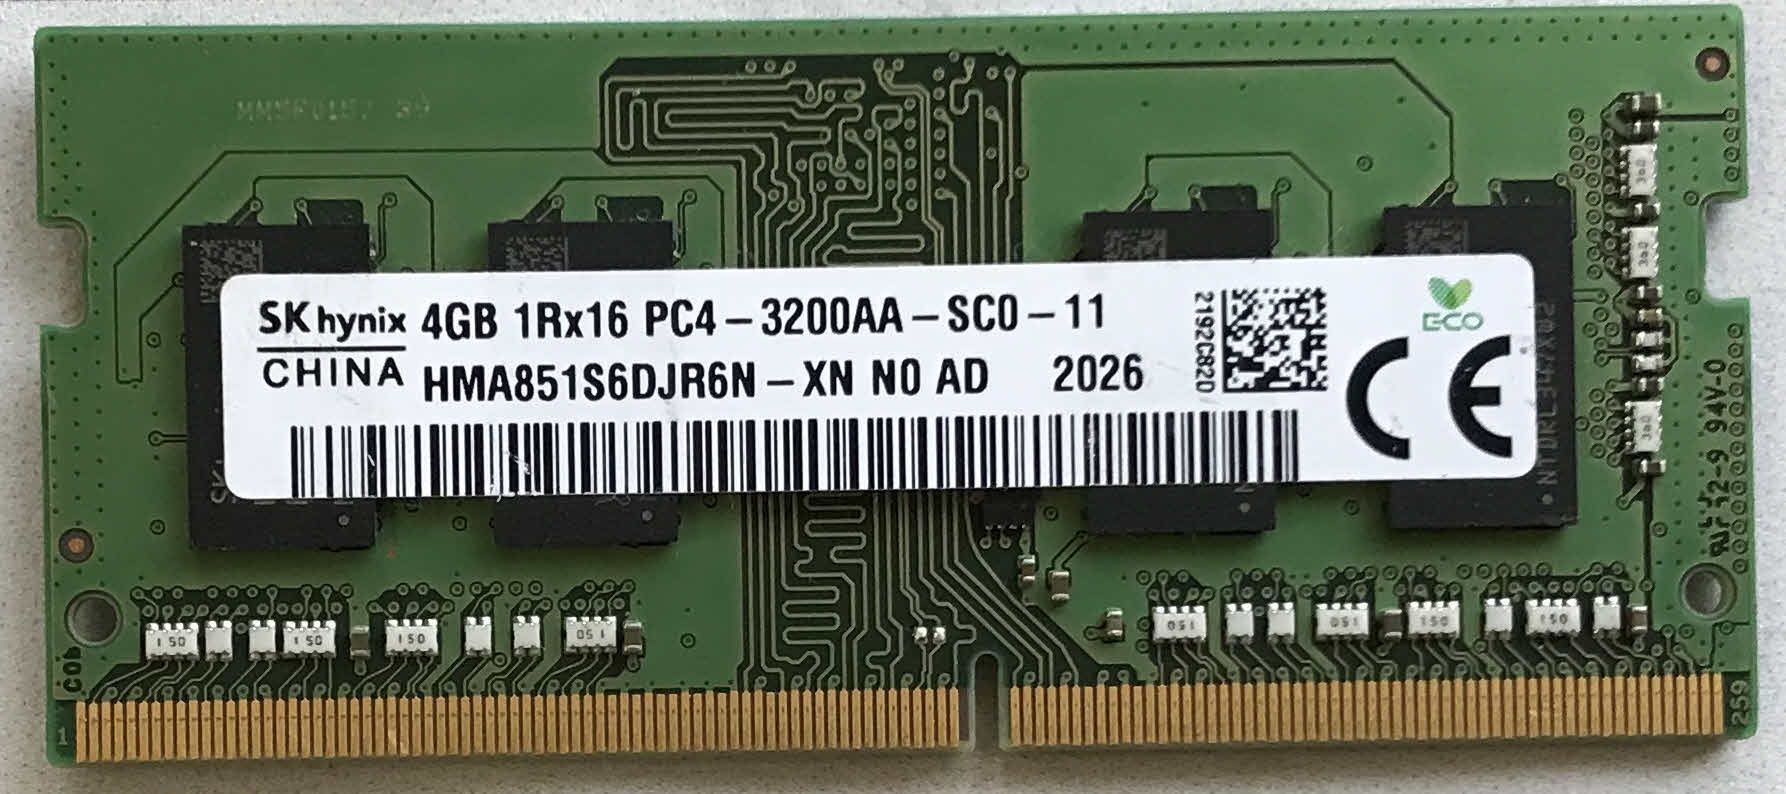 4GB 1Rx16 PC4-3200AA-SC0-11 SKhynix